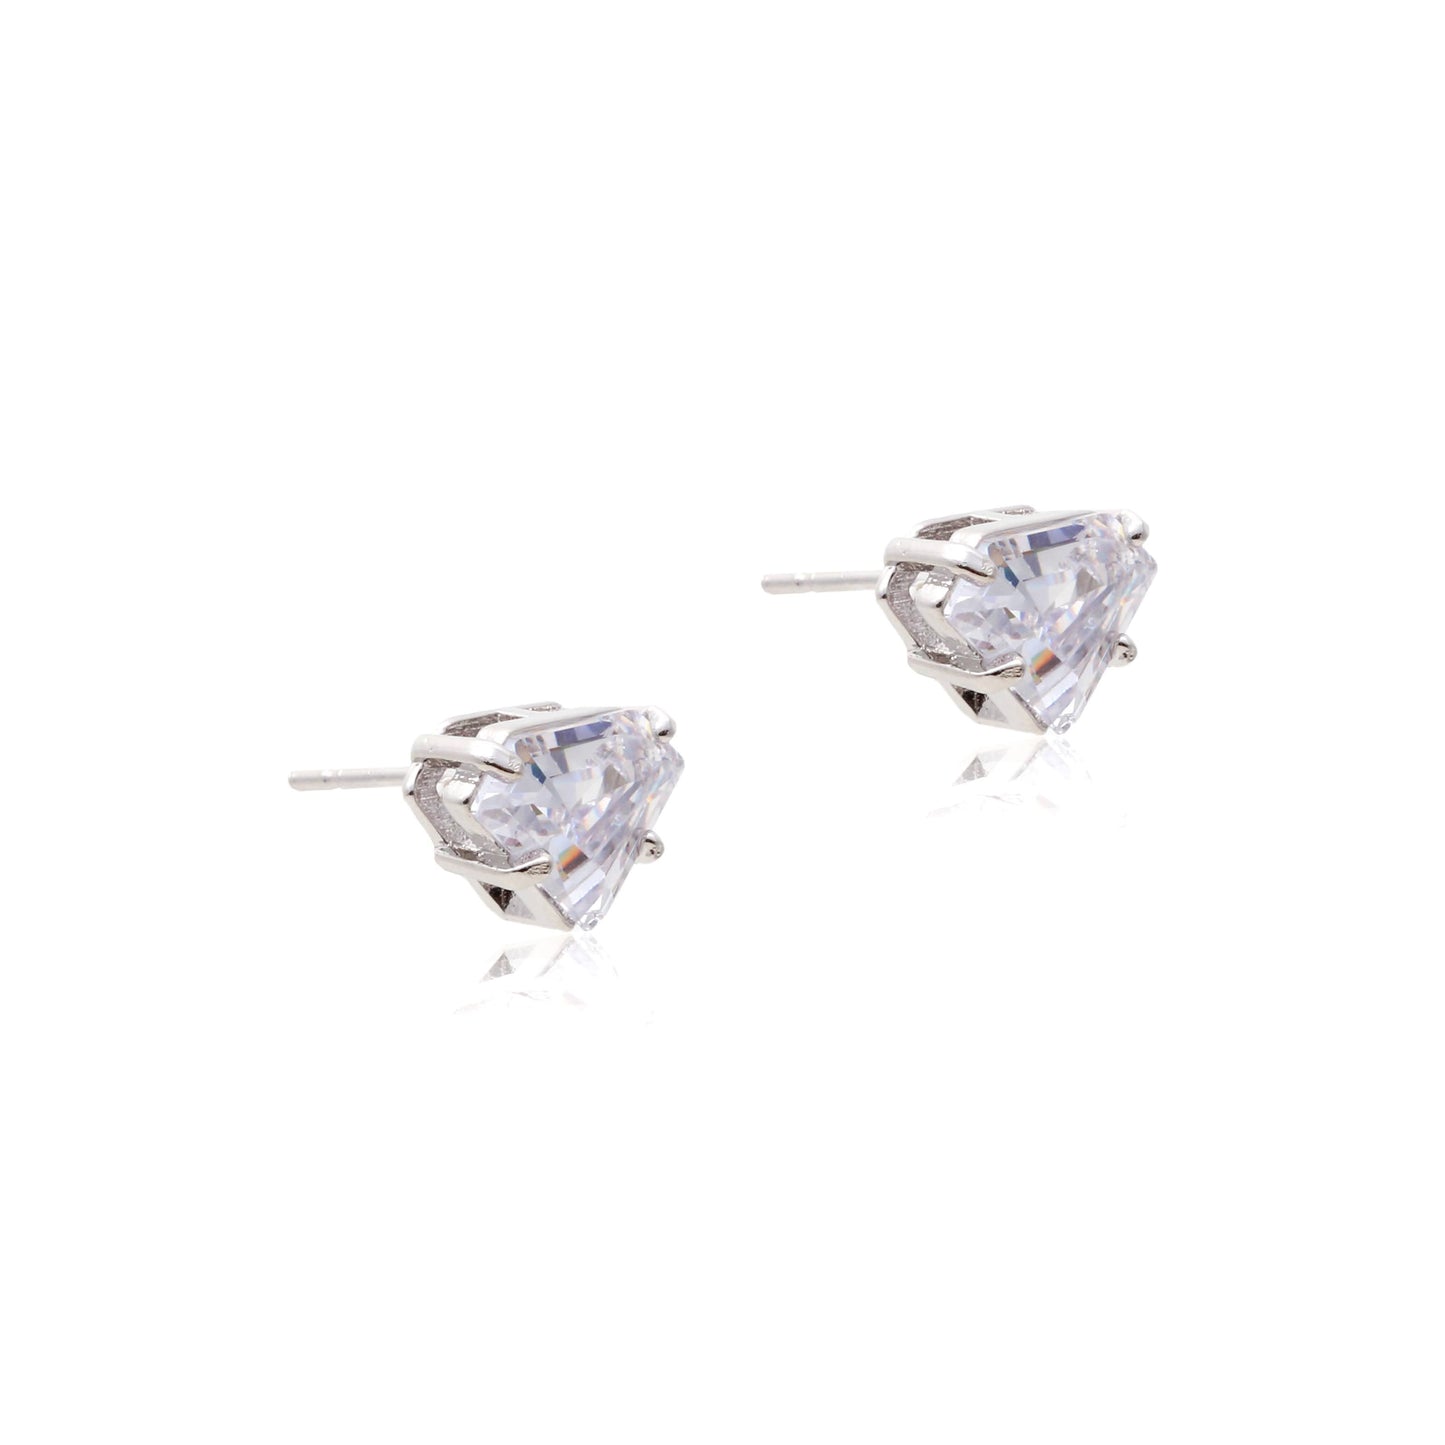 Luryan earrings in rhodium